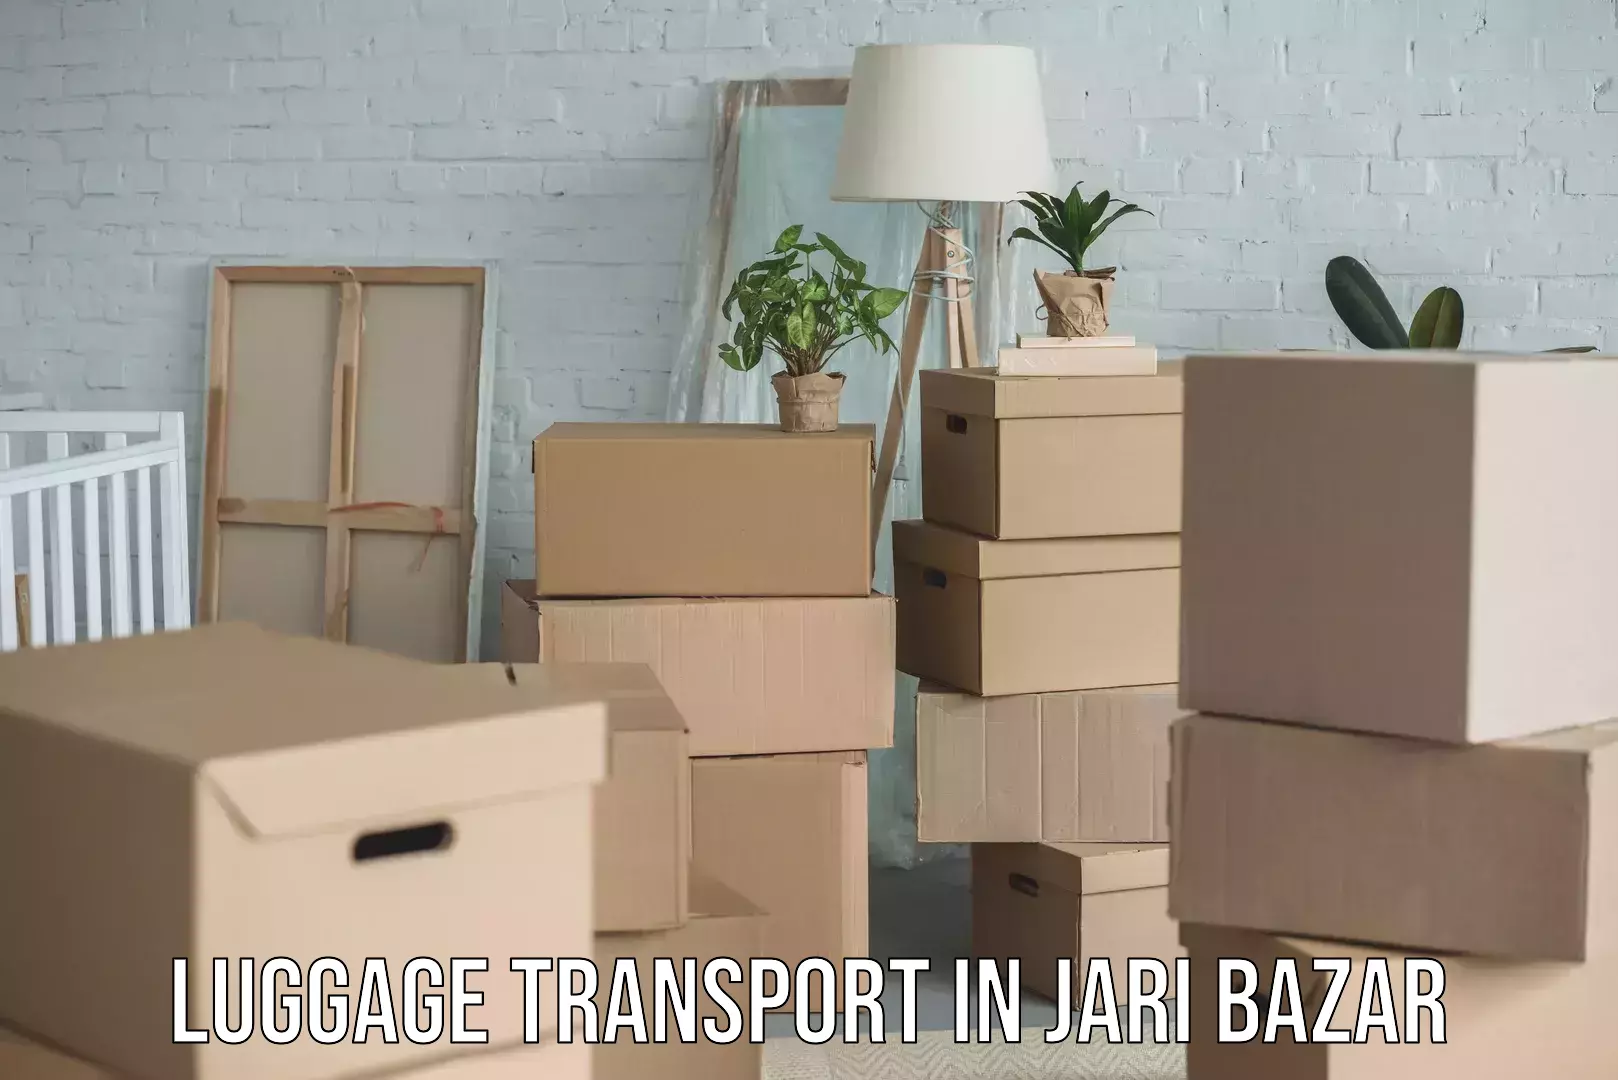 Luggage delivery solutions in Jari Bazar